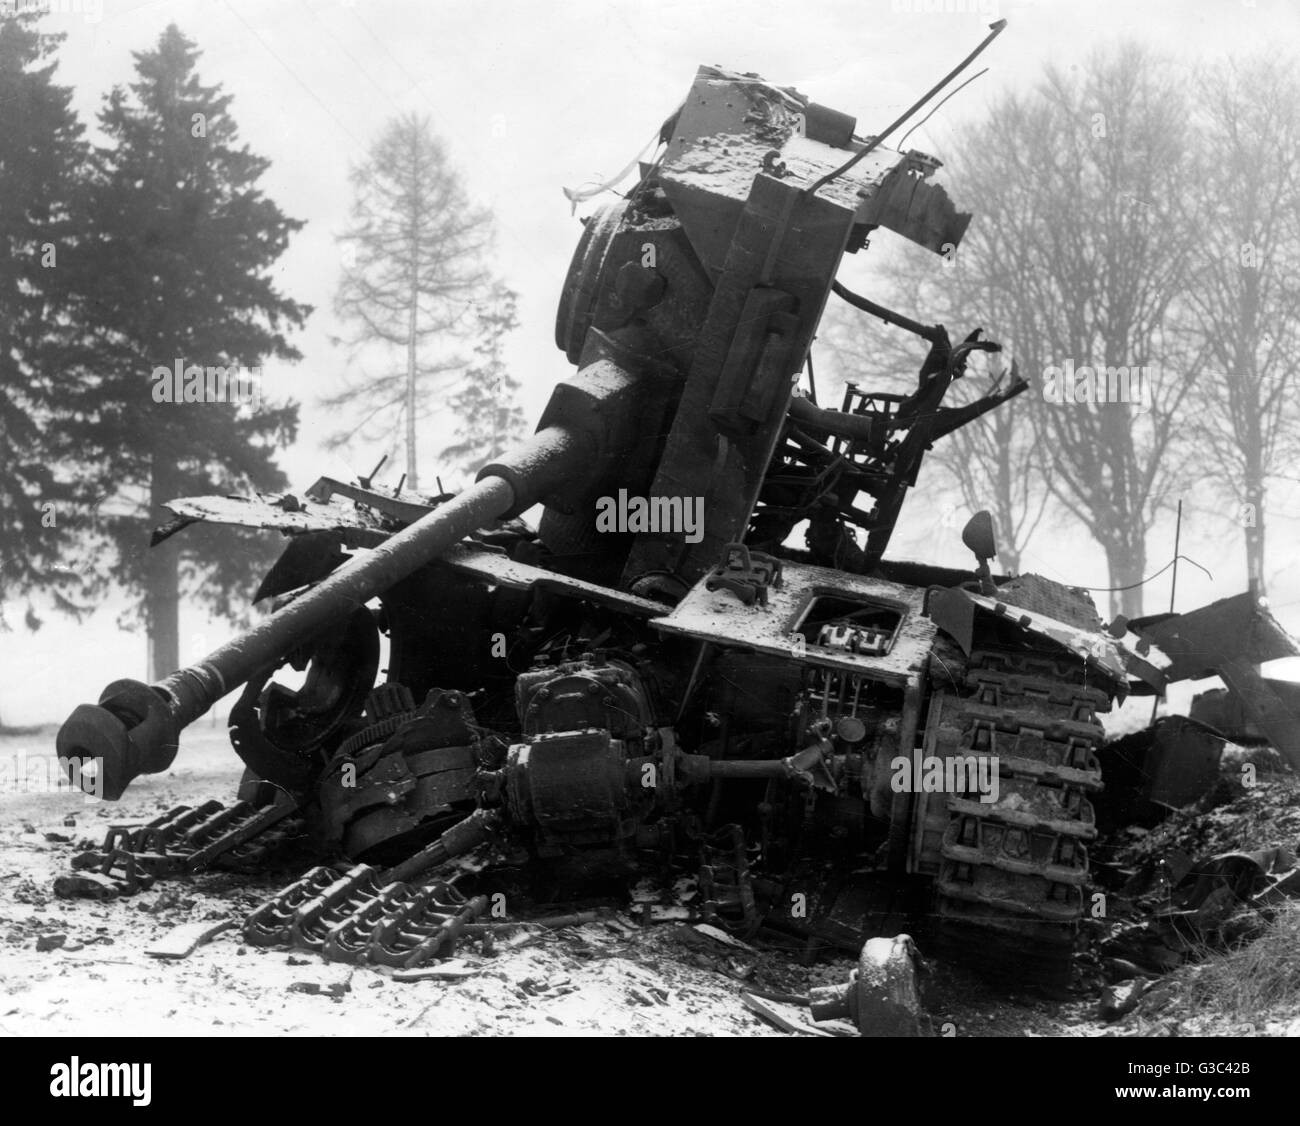 Il relitto di un carro armato tedesco, distrutto nei pressi di Bastogne durante la Battaglia di Bulge nella zona delle Ardenne del Belgio Data: 1944-45 Foto Stock